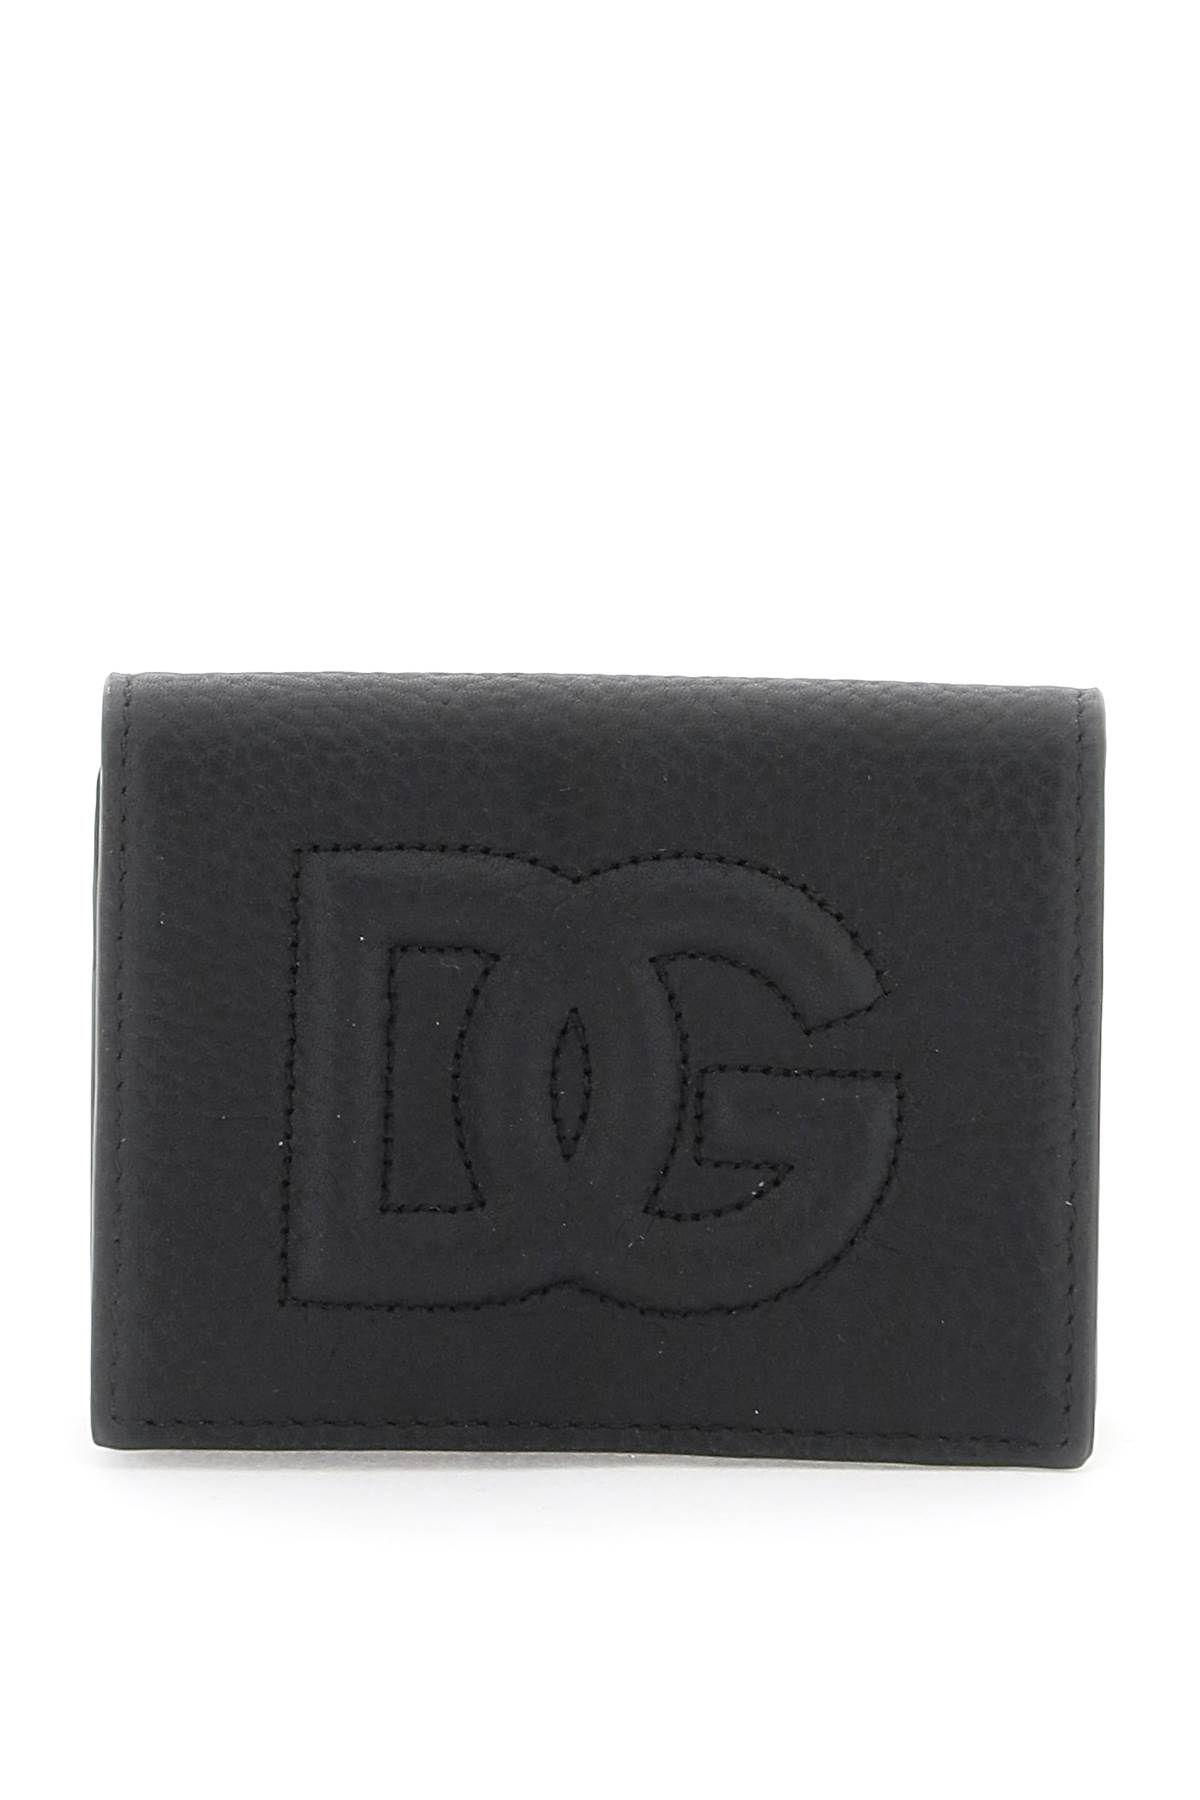 DOLCE & GABBANA dg logo card holder